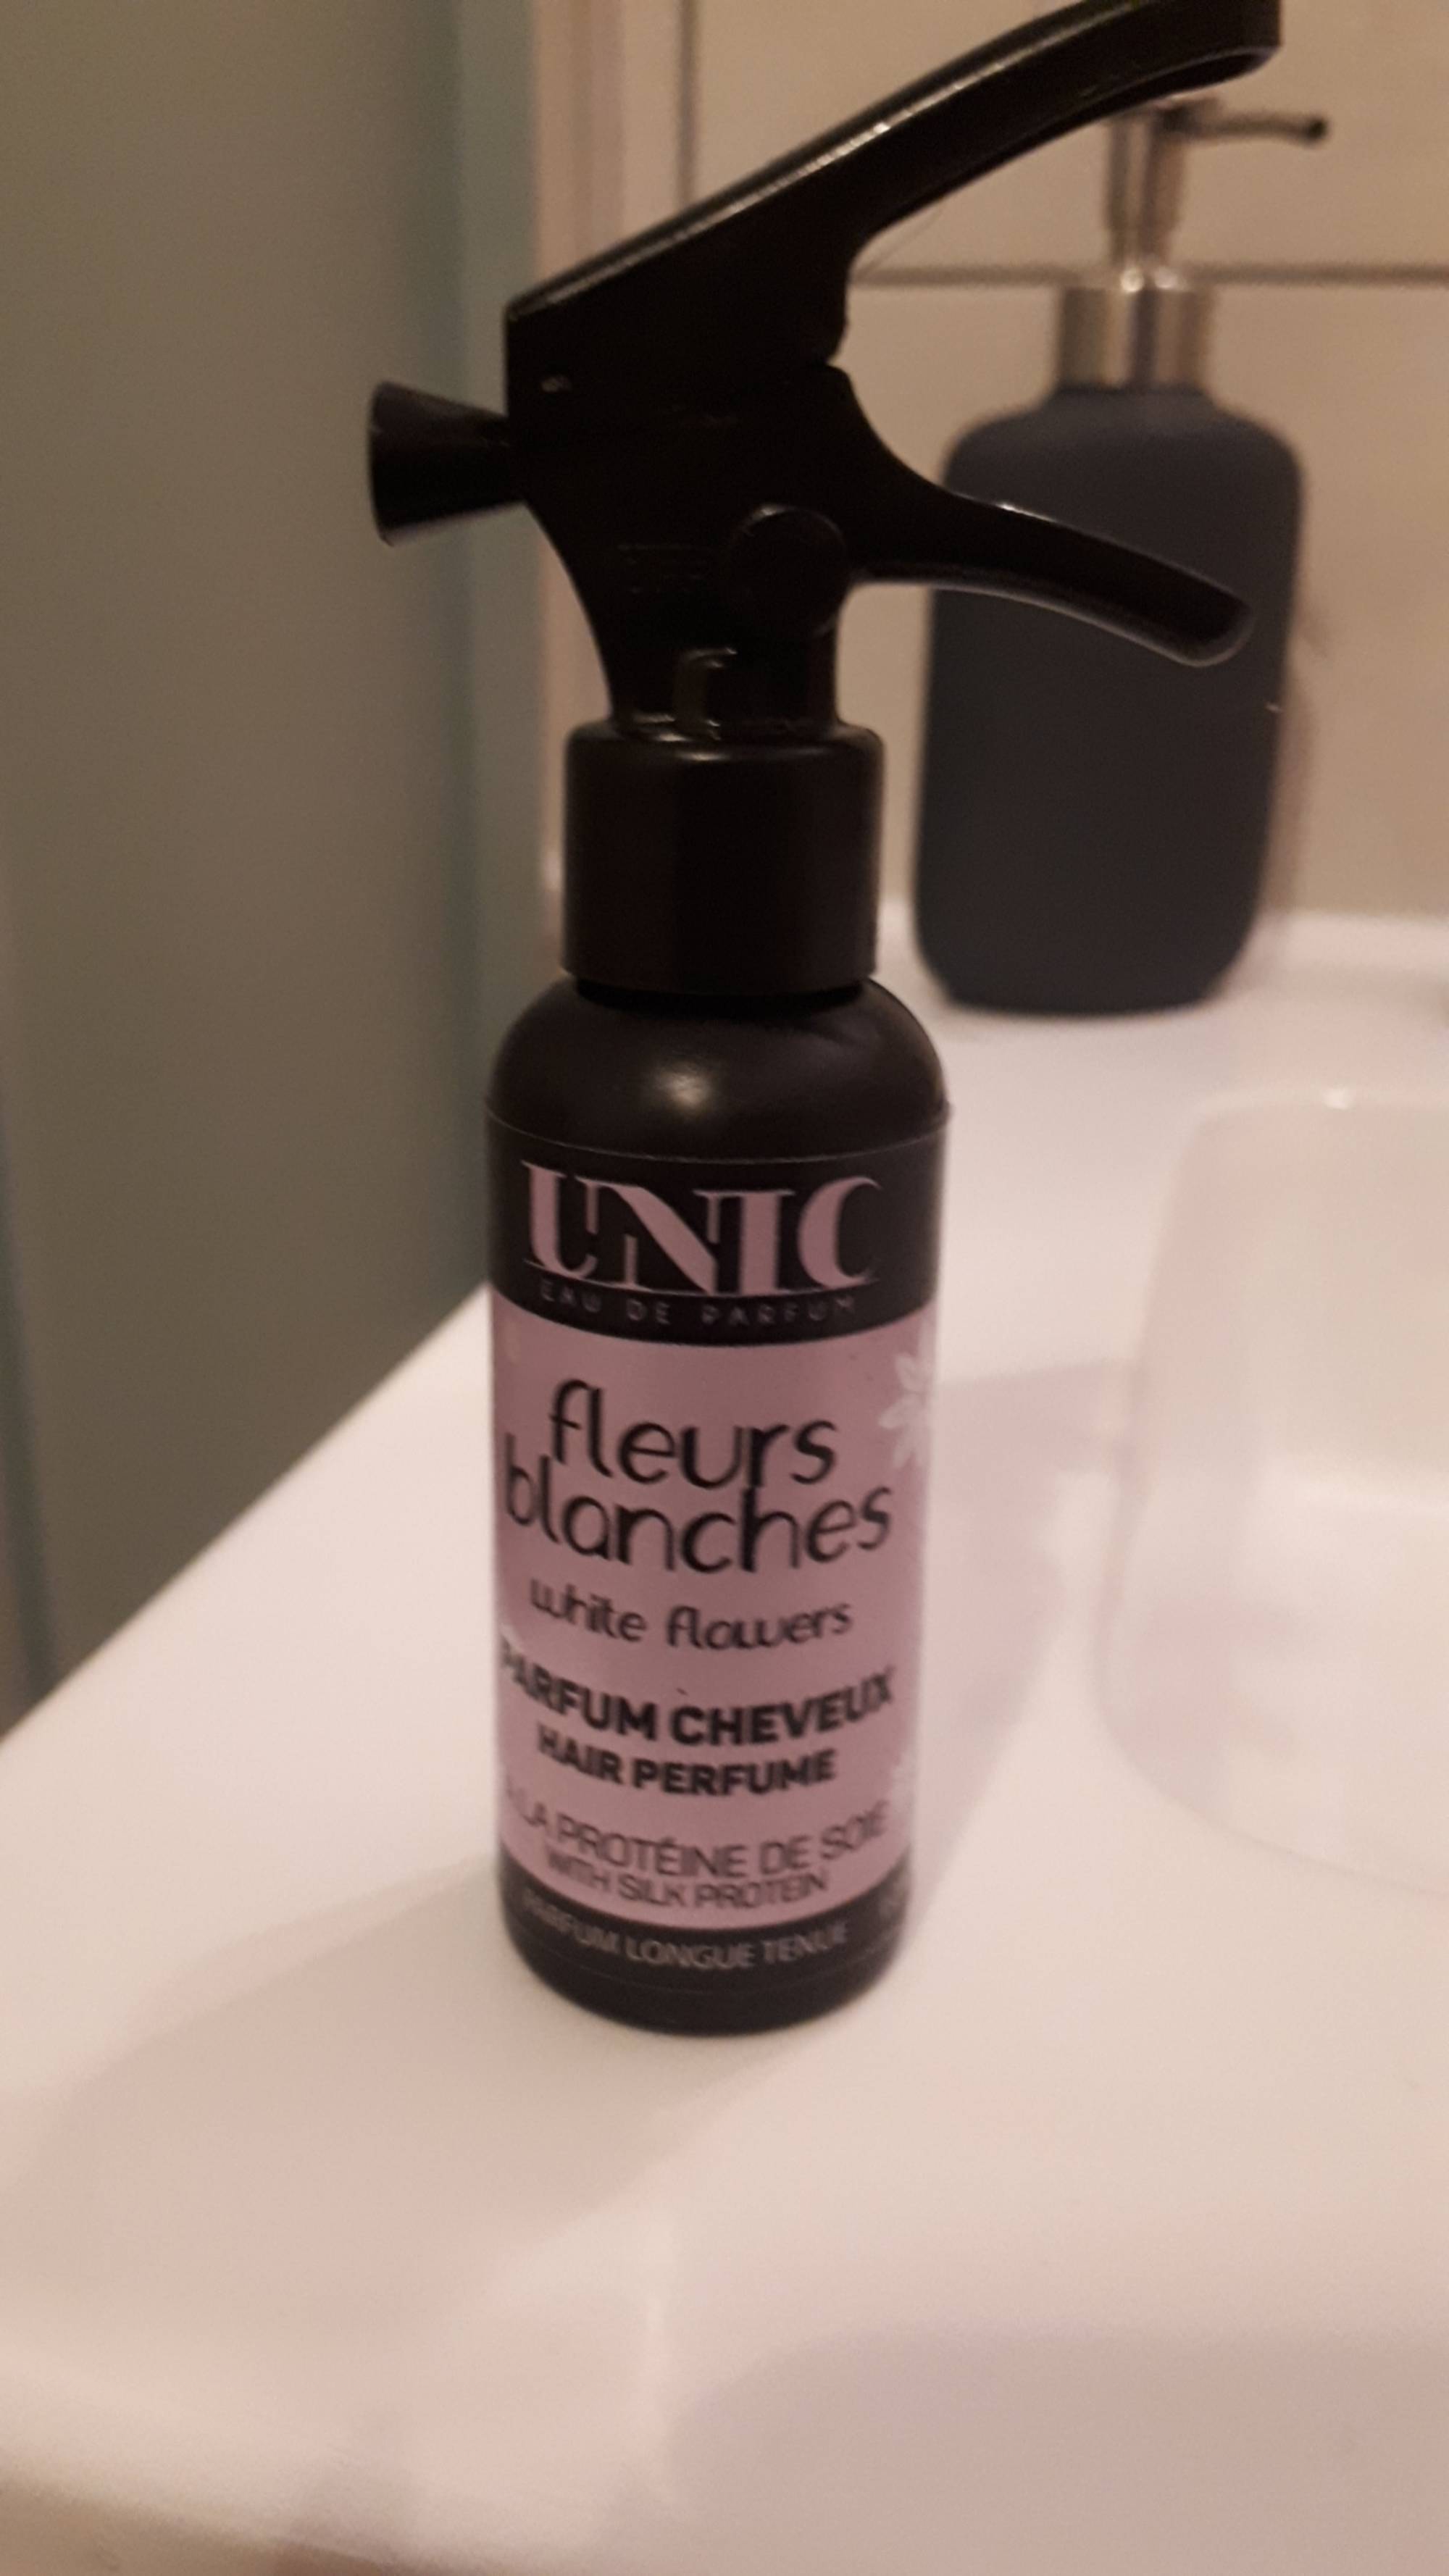 UNIC - Fleurs blanches - Parfum cheveux